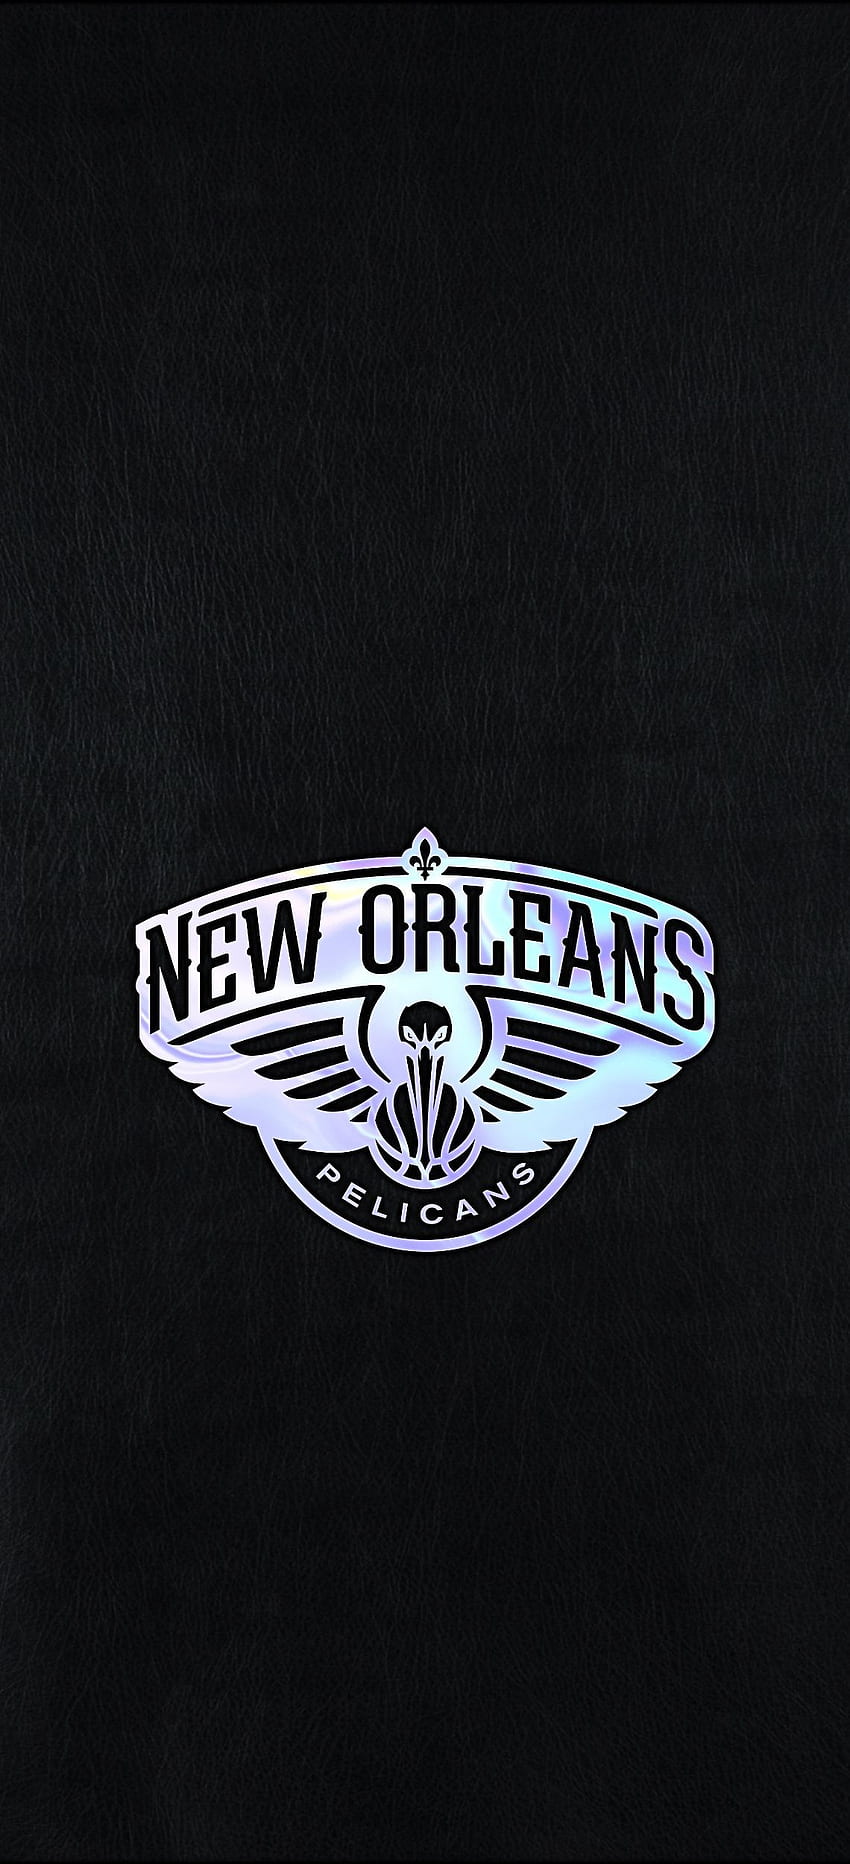 New Orleans Pelicans on Twitter iiiiiiiiiits WALLPAPER WEDNESDAY   httpstcoQbgerMQrNW  Twitter